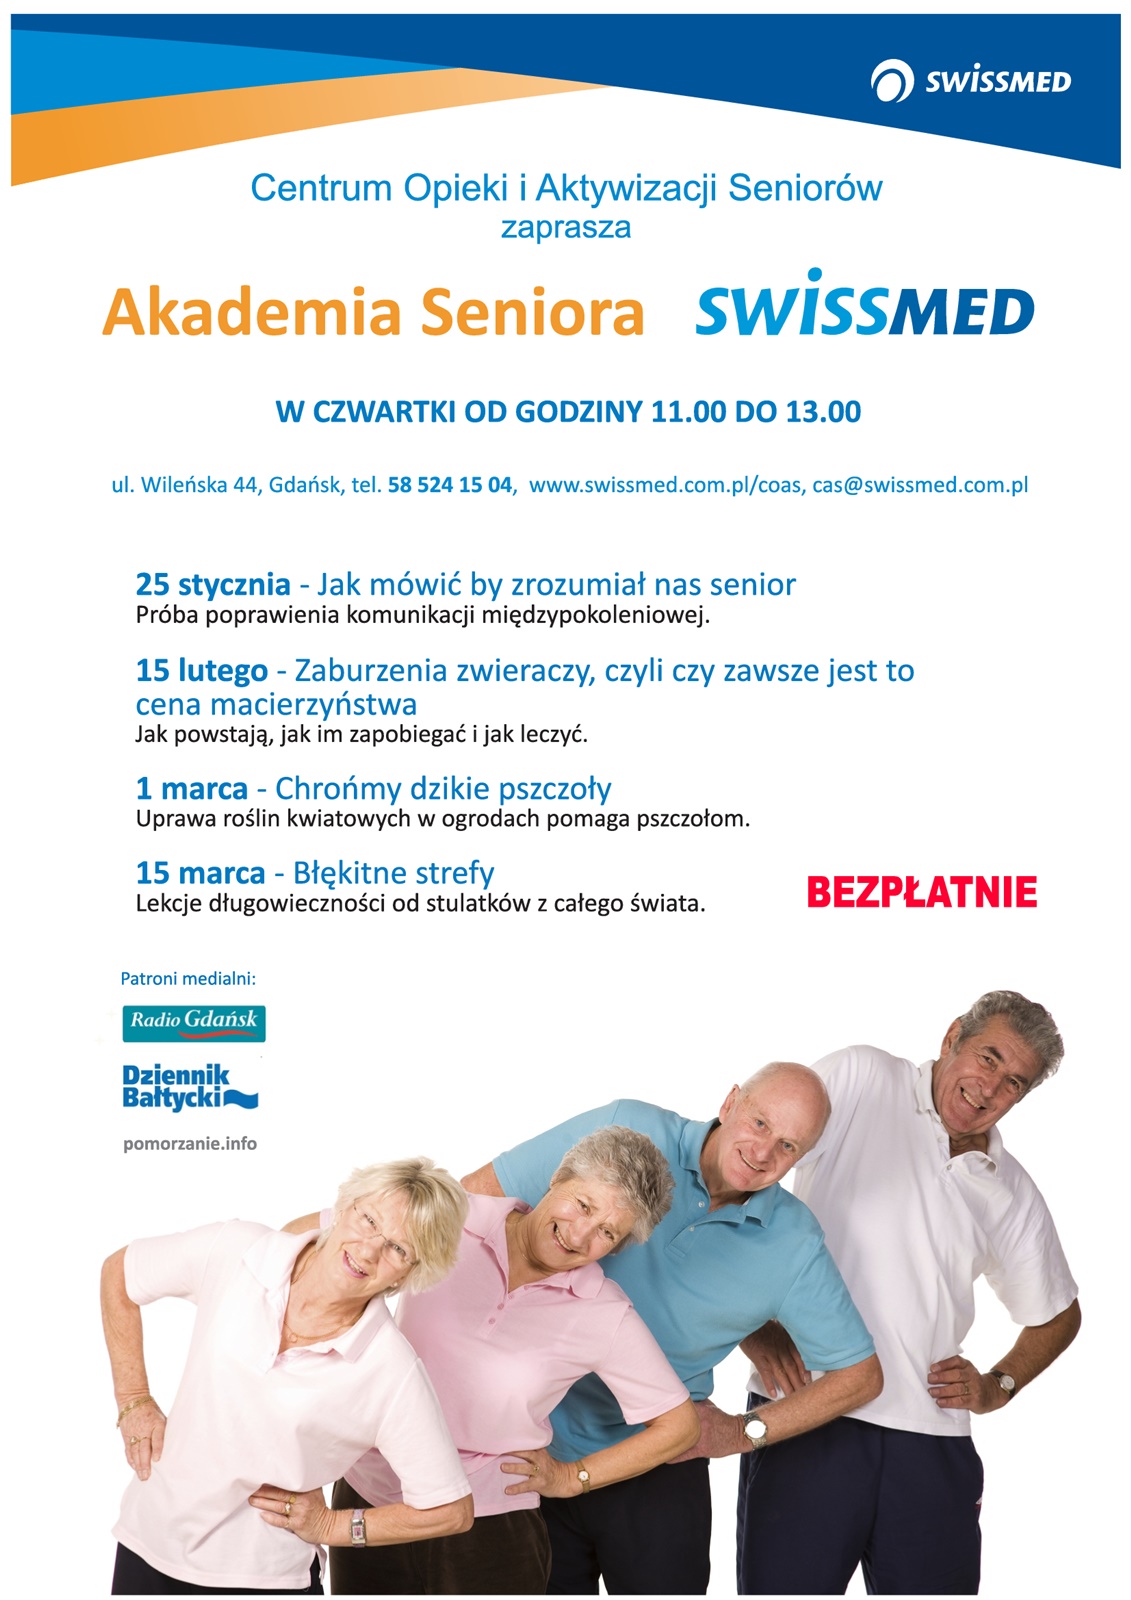 Lekcje długowieczności od stulatków z całego świata w Akademii Seniora Swissmed.